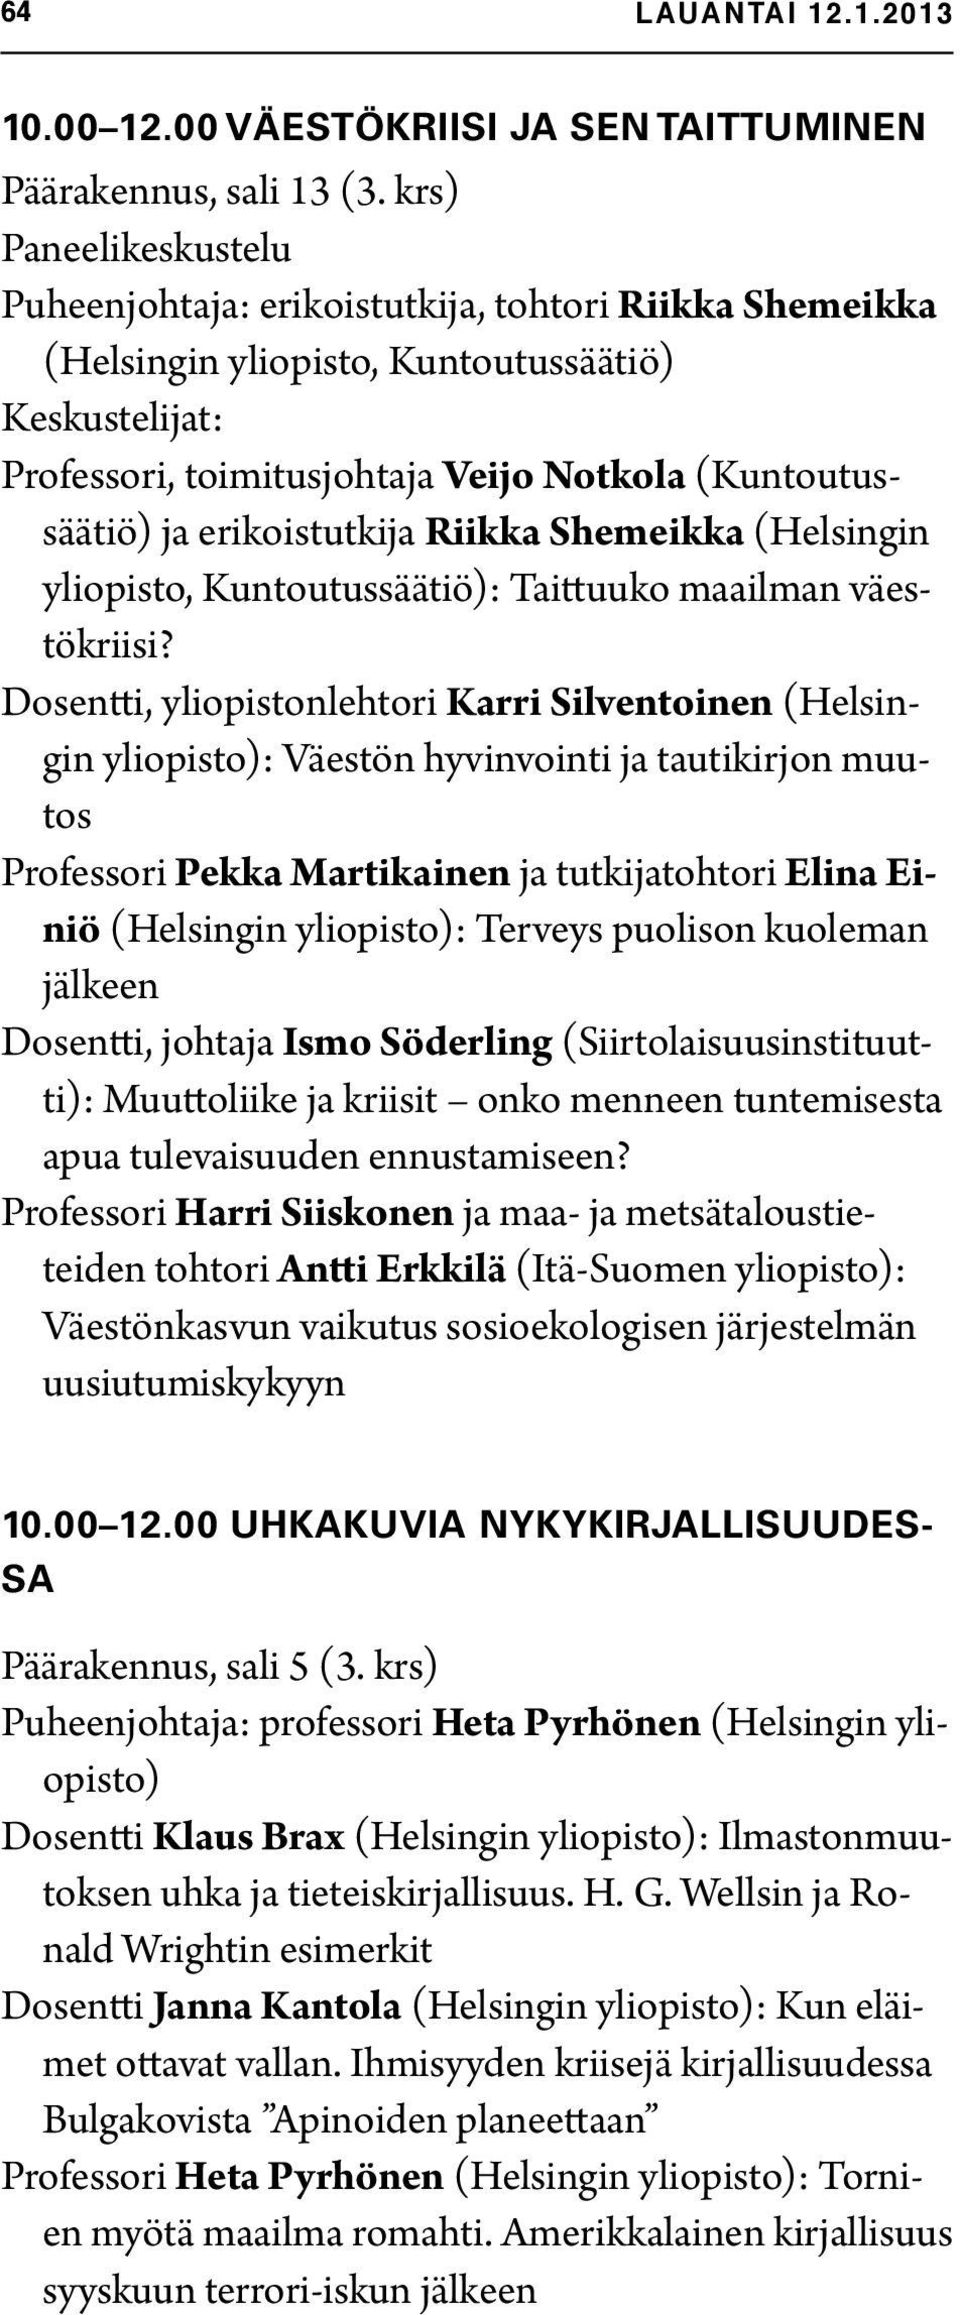 erikoistutkija Riikka Shemeikka (Helsingin yliopisto, Kuntoutussäätiö): Taittuuko maailman väestökriisi?